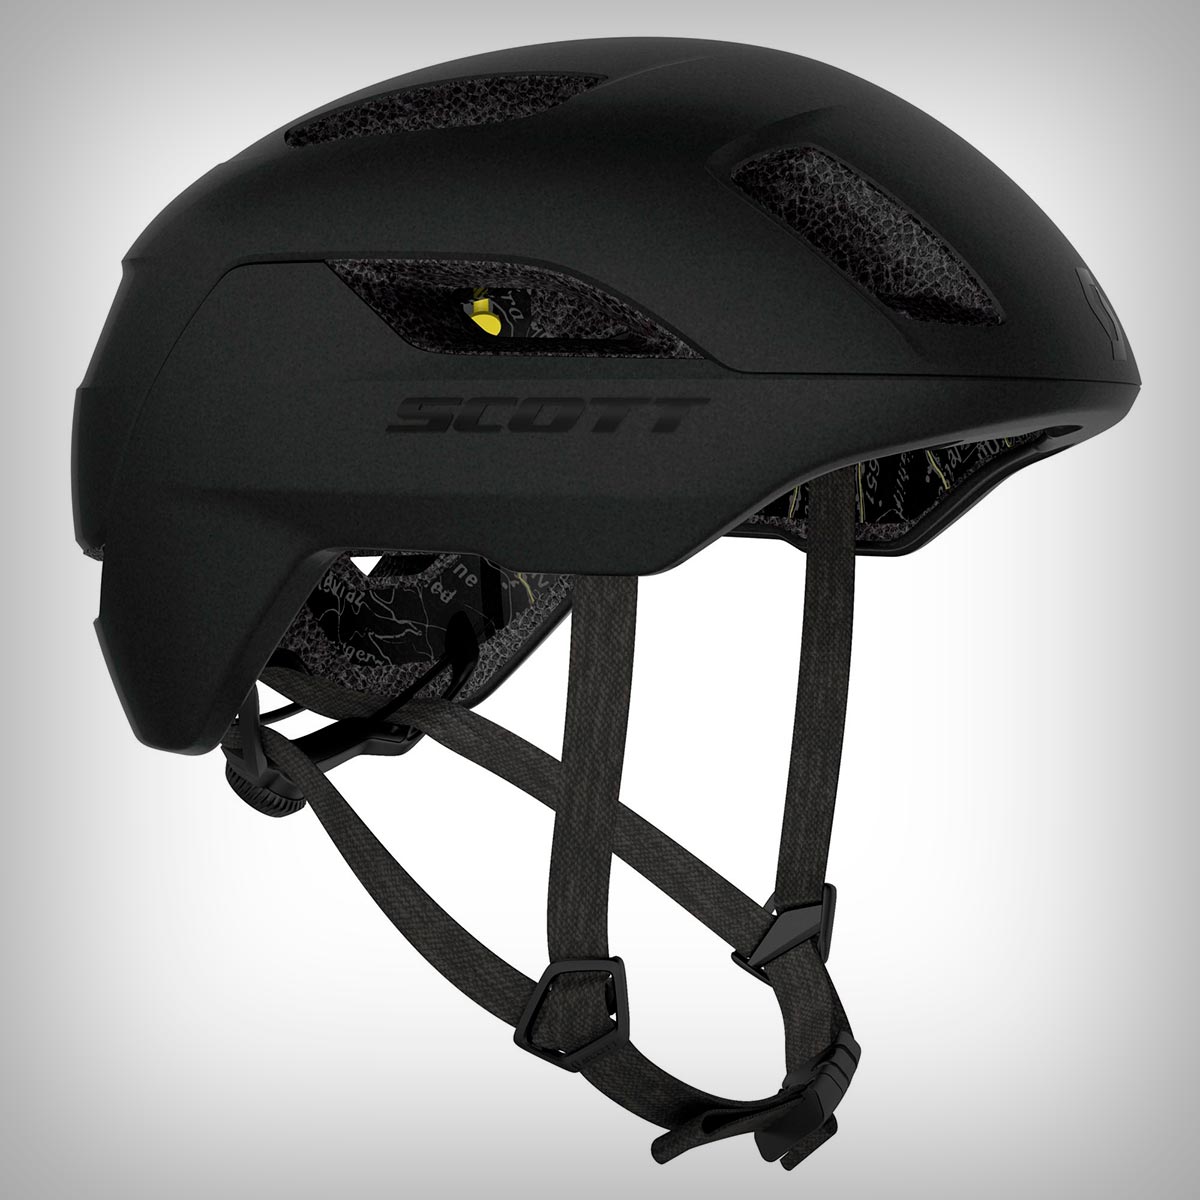 Scott Sports presenta La Mokka Plus Sensor, un casco con MIPS y luz de freno automática